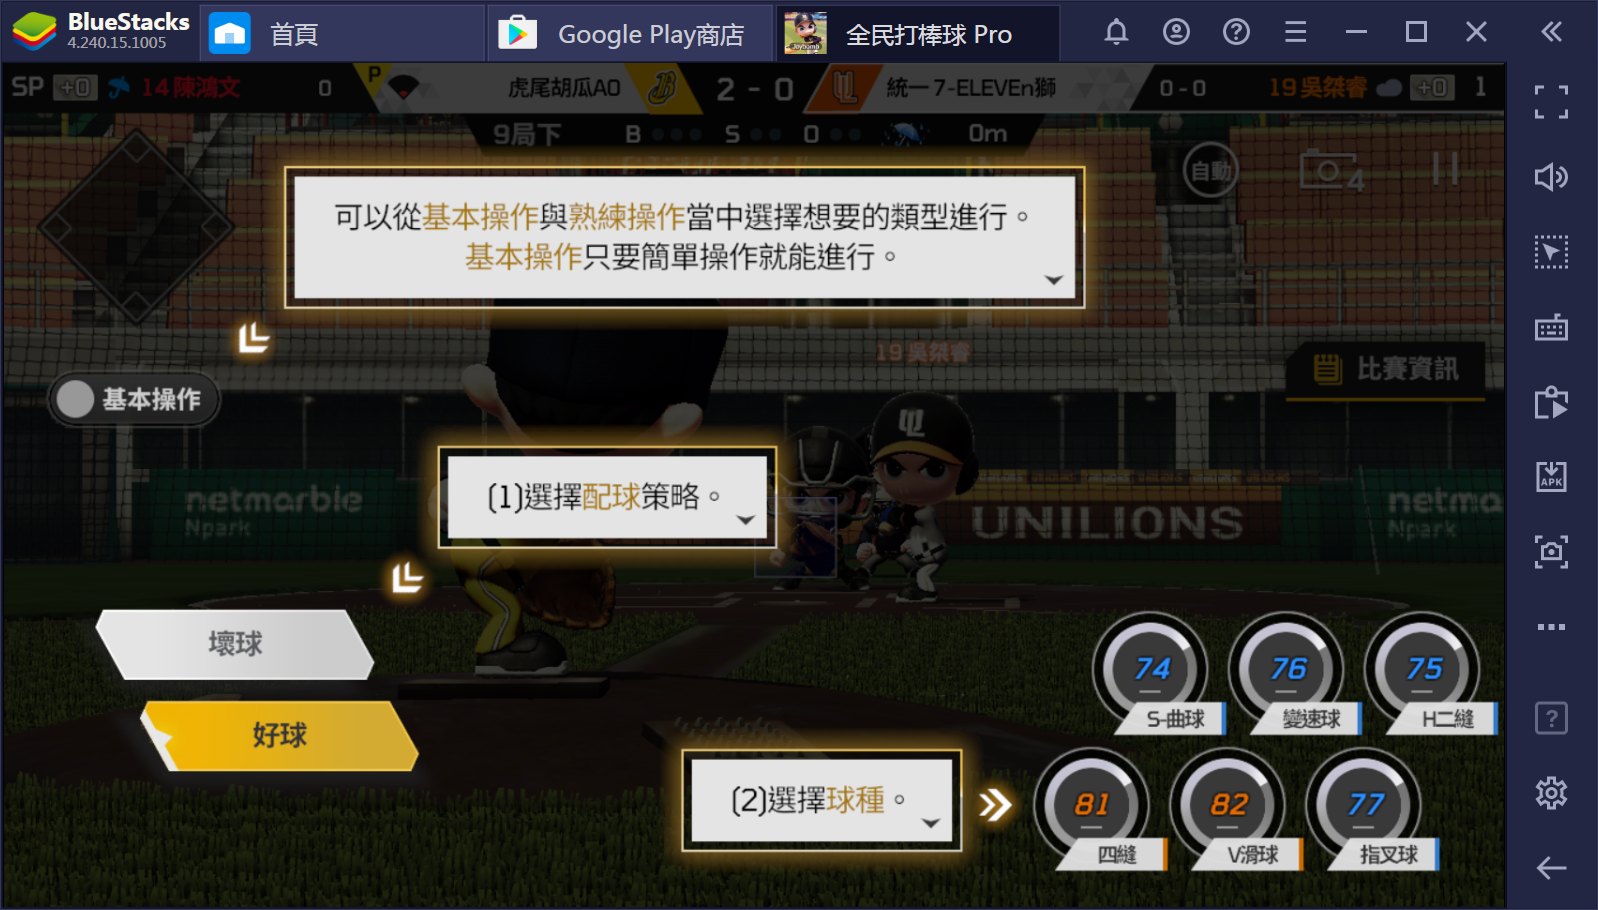 使用BlueStacks在PC上遊玩全民運動遊戲《全民打棒球Pro》